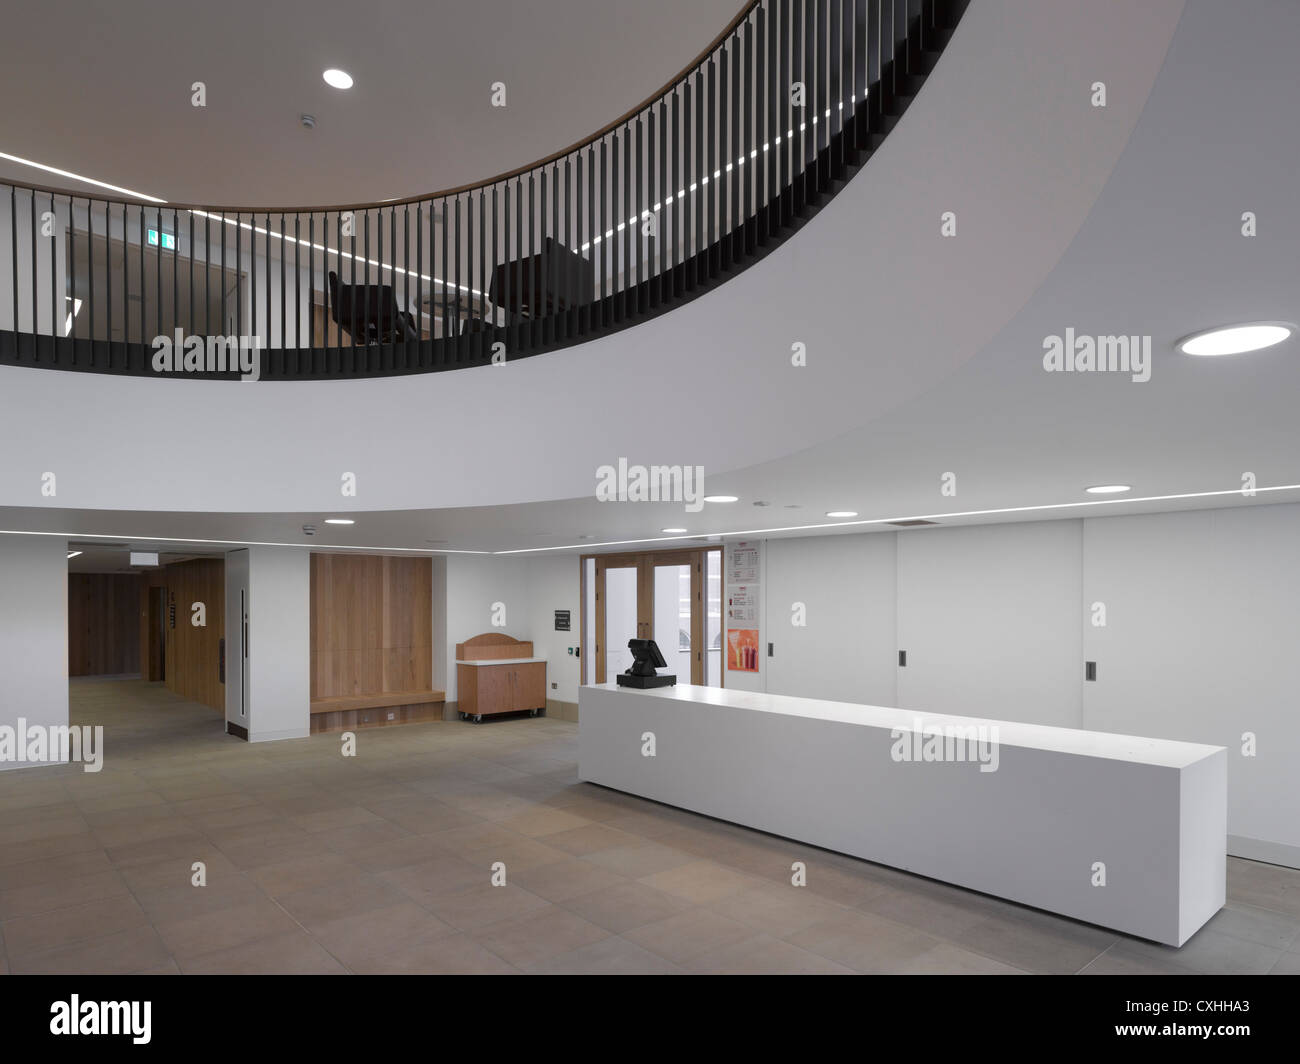 Bramall Musik-Gebäude, Universität von Birmingham, Birmingham, Vereinigtes Königreich. Architekt: Glenn Howells Architects, 2012. Einga Stockfoto